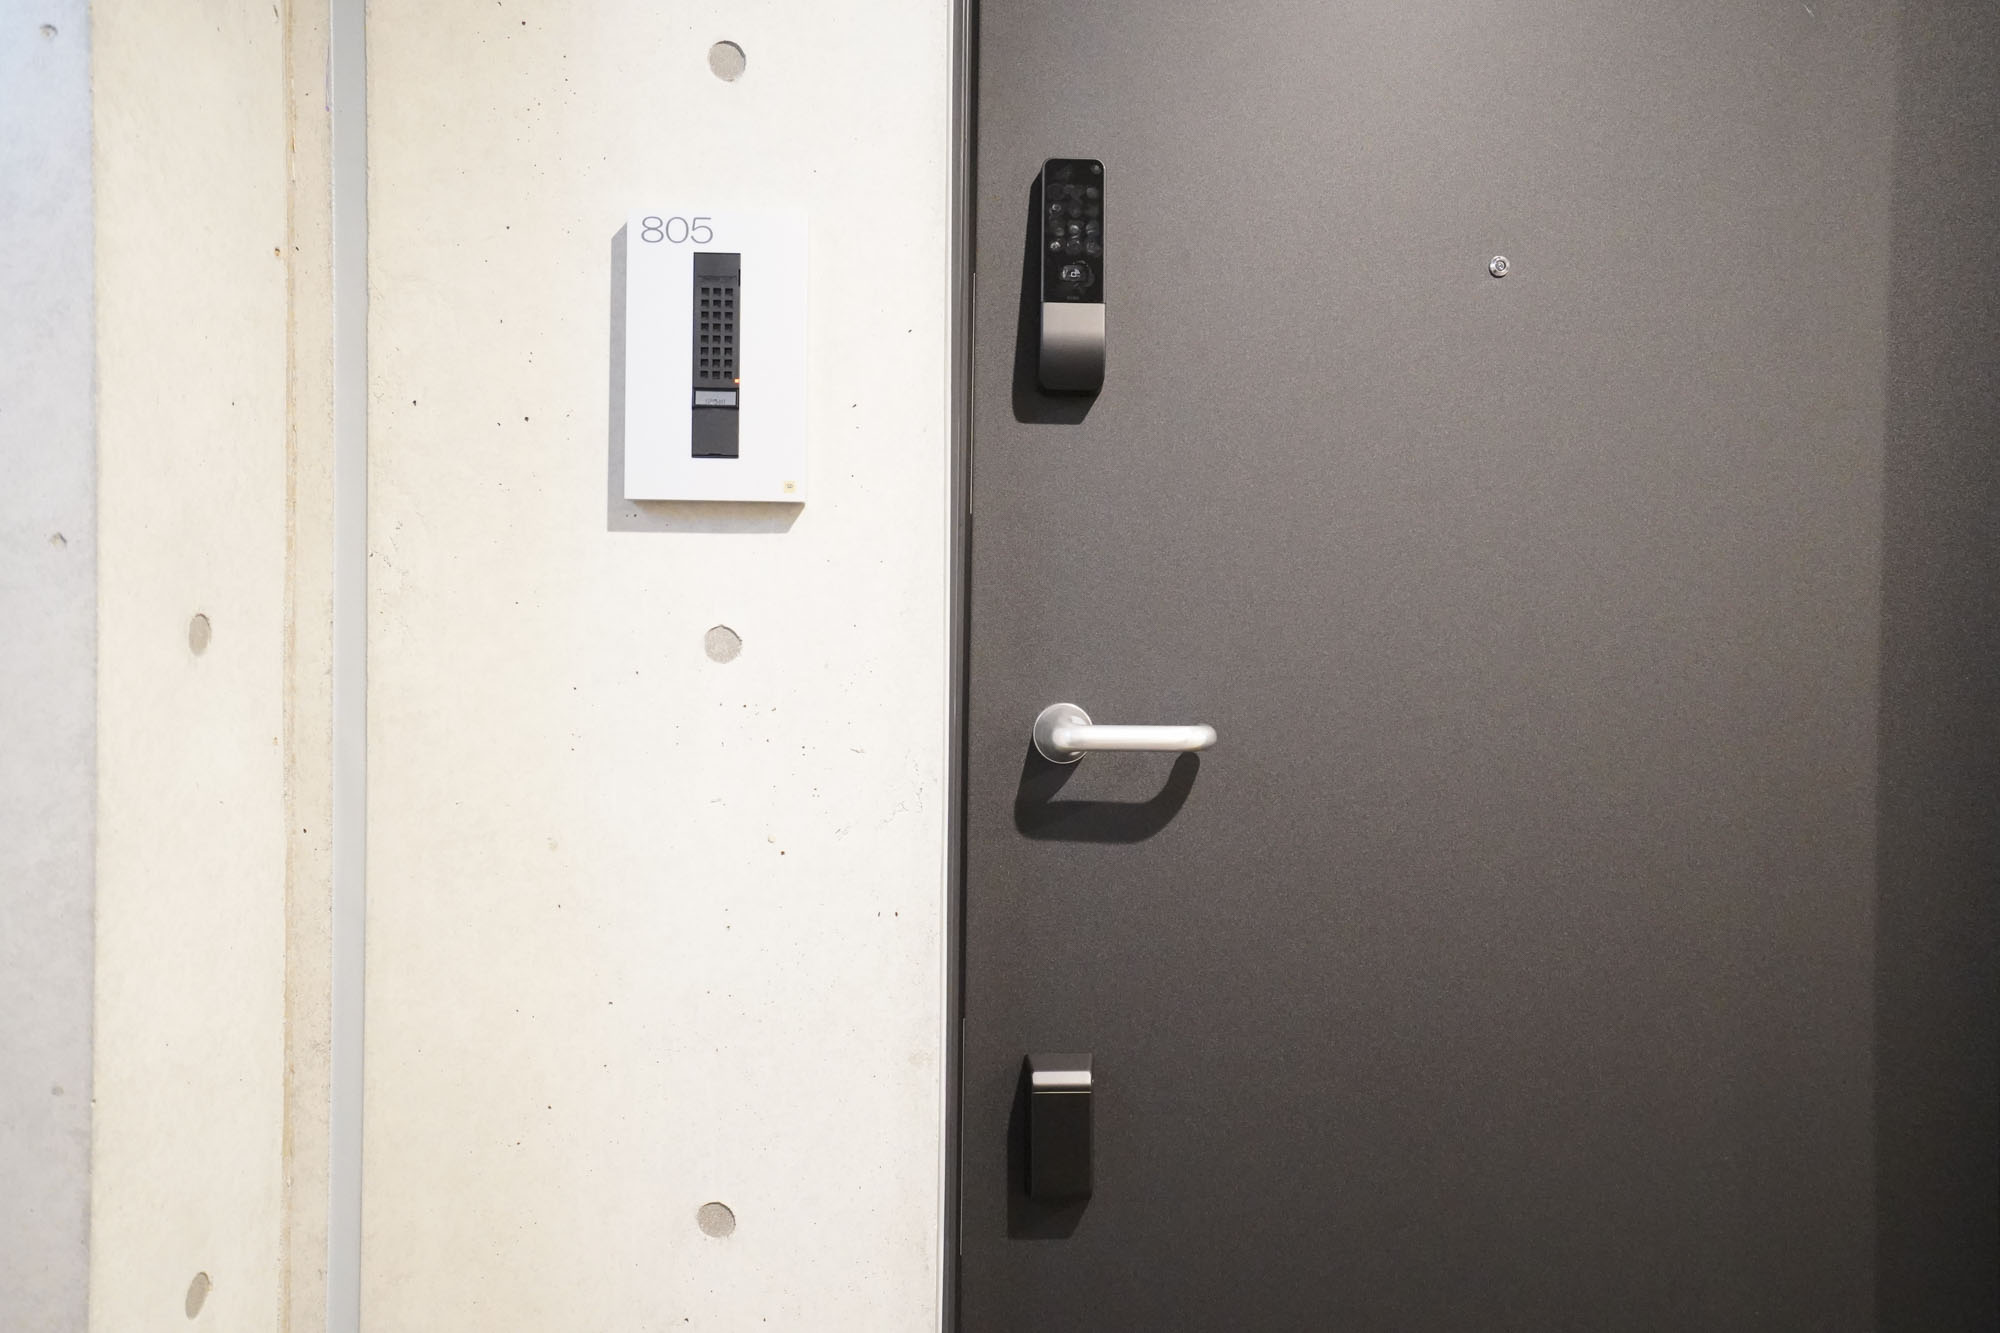 ZOOM江坂公園では、全部屋でセキュリティ性の高いスマートロックが採用されています。スマートフォンもしくはICOCAなど交通系ICカードで解錠が可能。